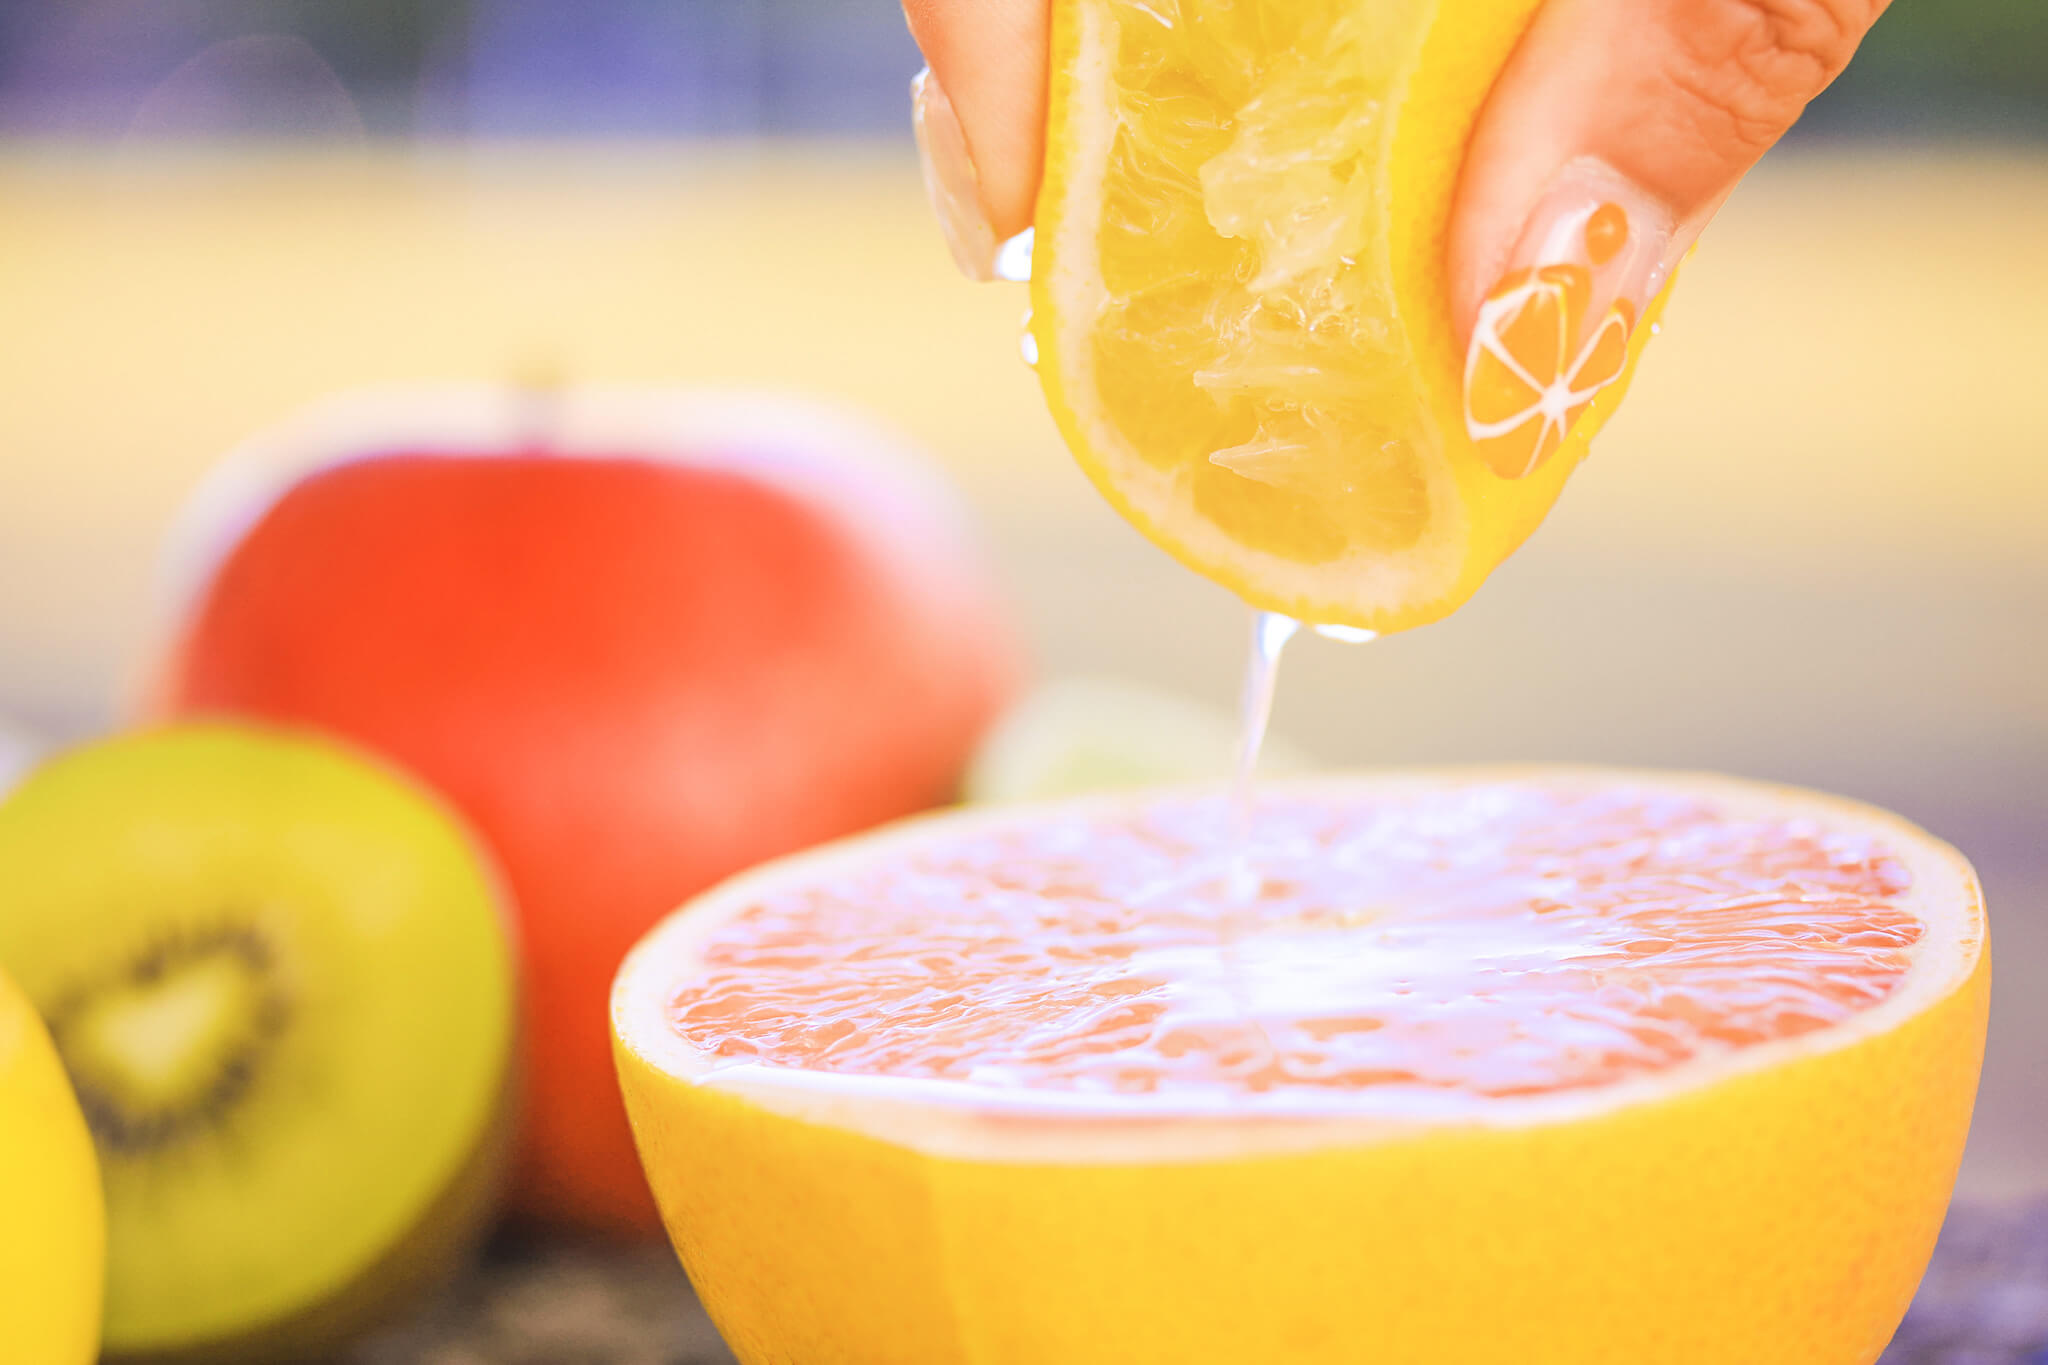 レモンを絞る手のイメージ画像